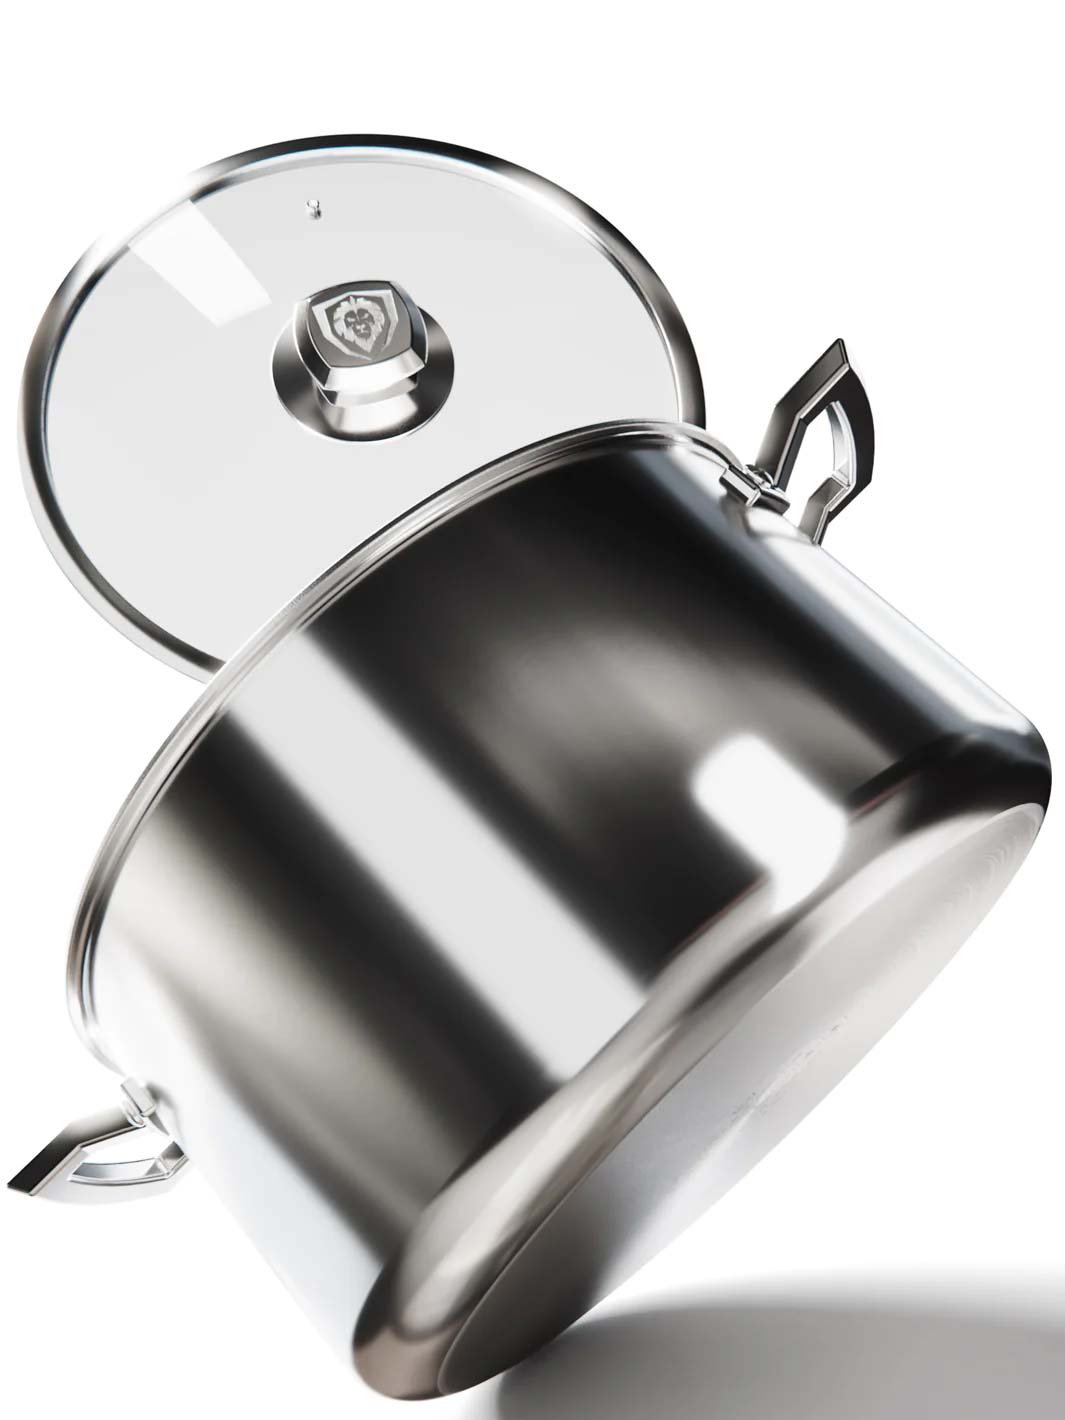 12 Aluminum Frying Pan & Skillet | The Oberon Series | Dalstrong